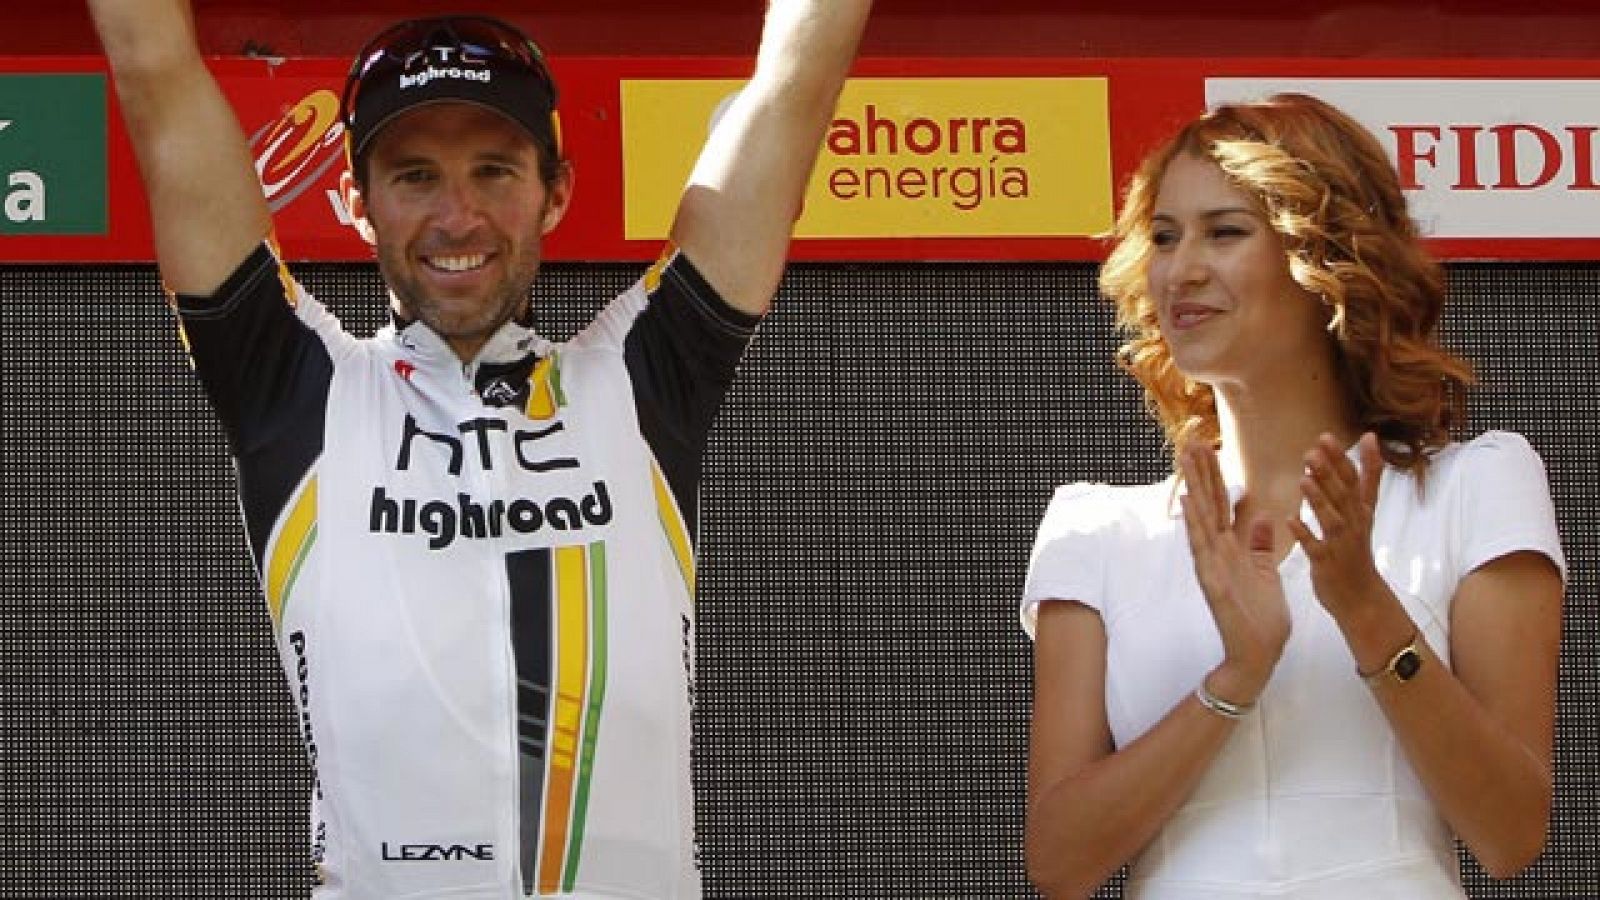 El corredor suizo se impone en el sprint de la 13ª etapa de la Vuelta 2011, con pocas novedades en la general